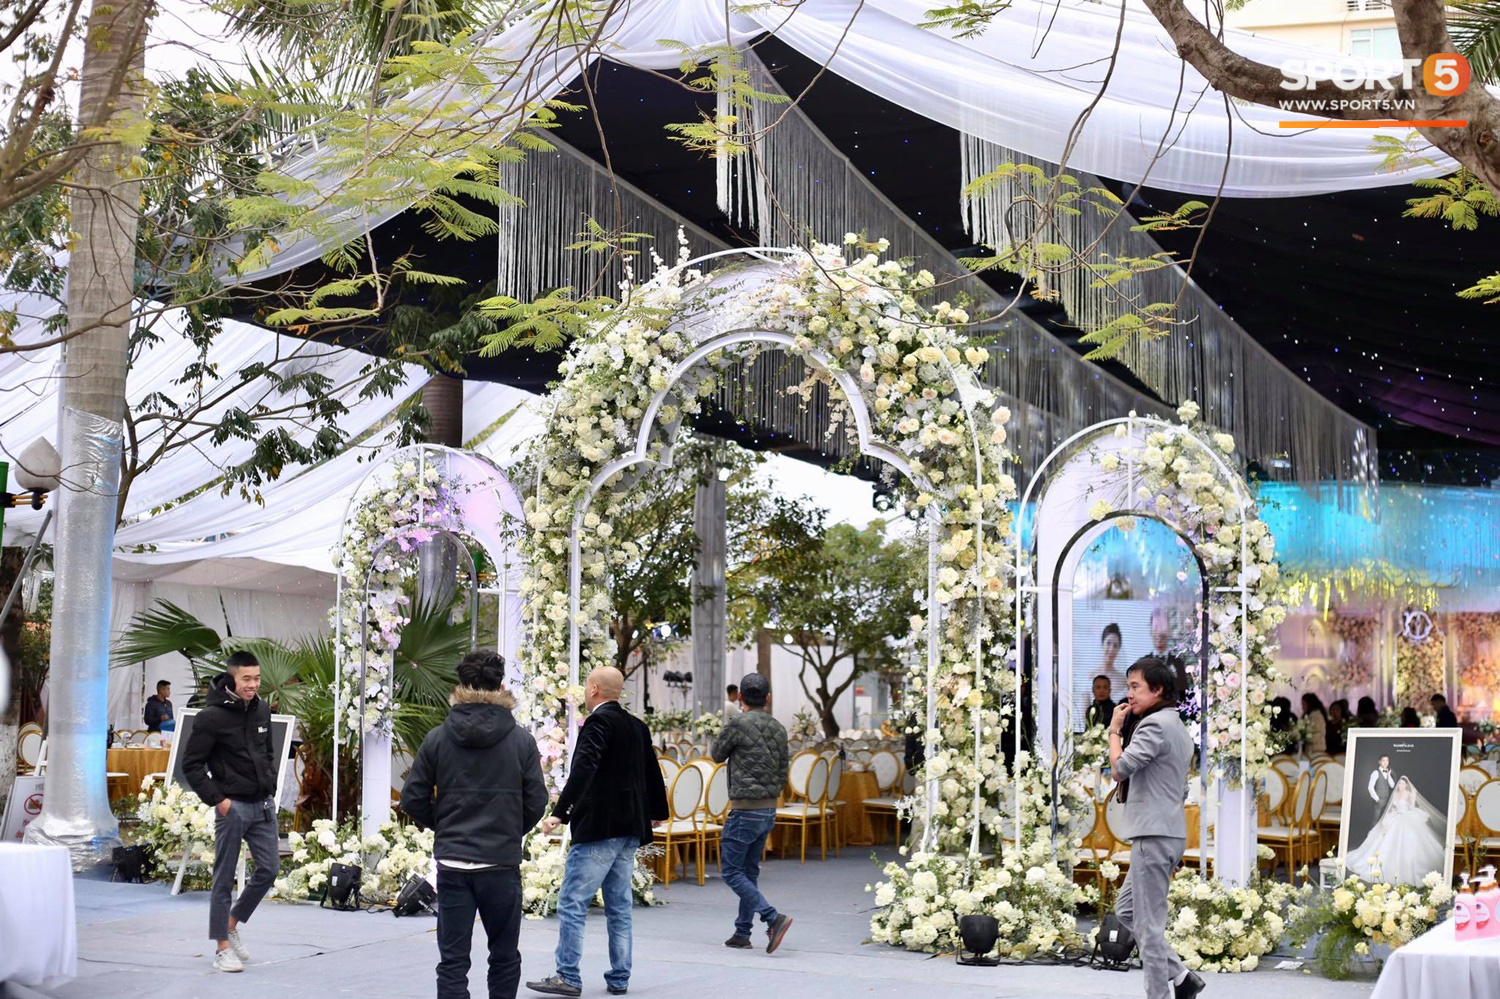 Đám cưới Tiến Dũng và Khánh Linh ở Bắc Ninh: Mời hơn 1500 khách, quà cảm ơn trao tay ngọt ngào - Ảnh 1.